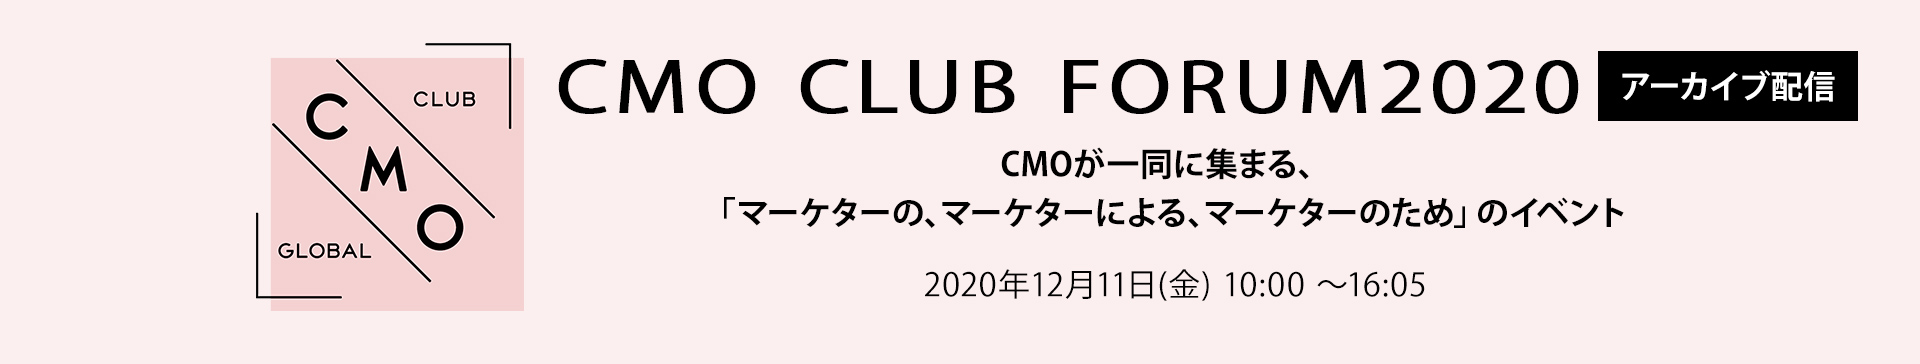 CMO CLUB FORUM2020アーカイブ配信 CMOが一同に集まる、「マーケターの、マーケターによる、マーケターのため」のイベント